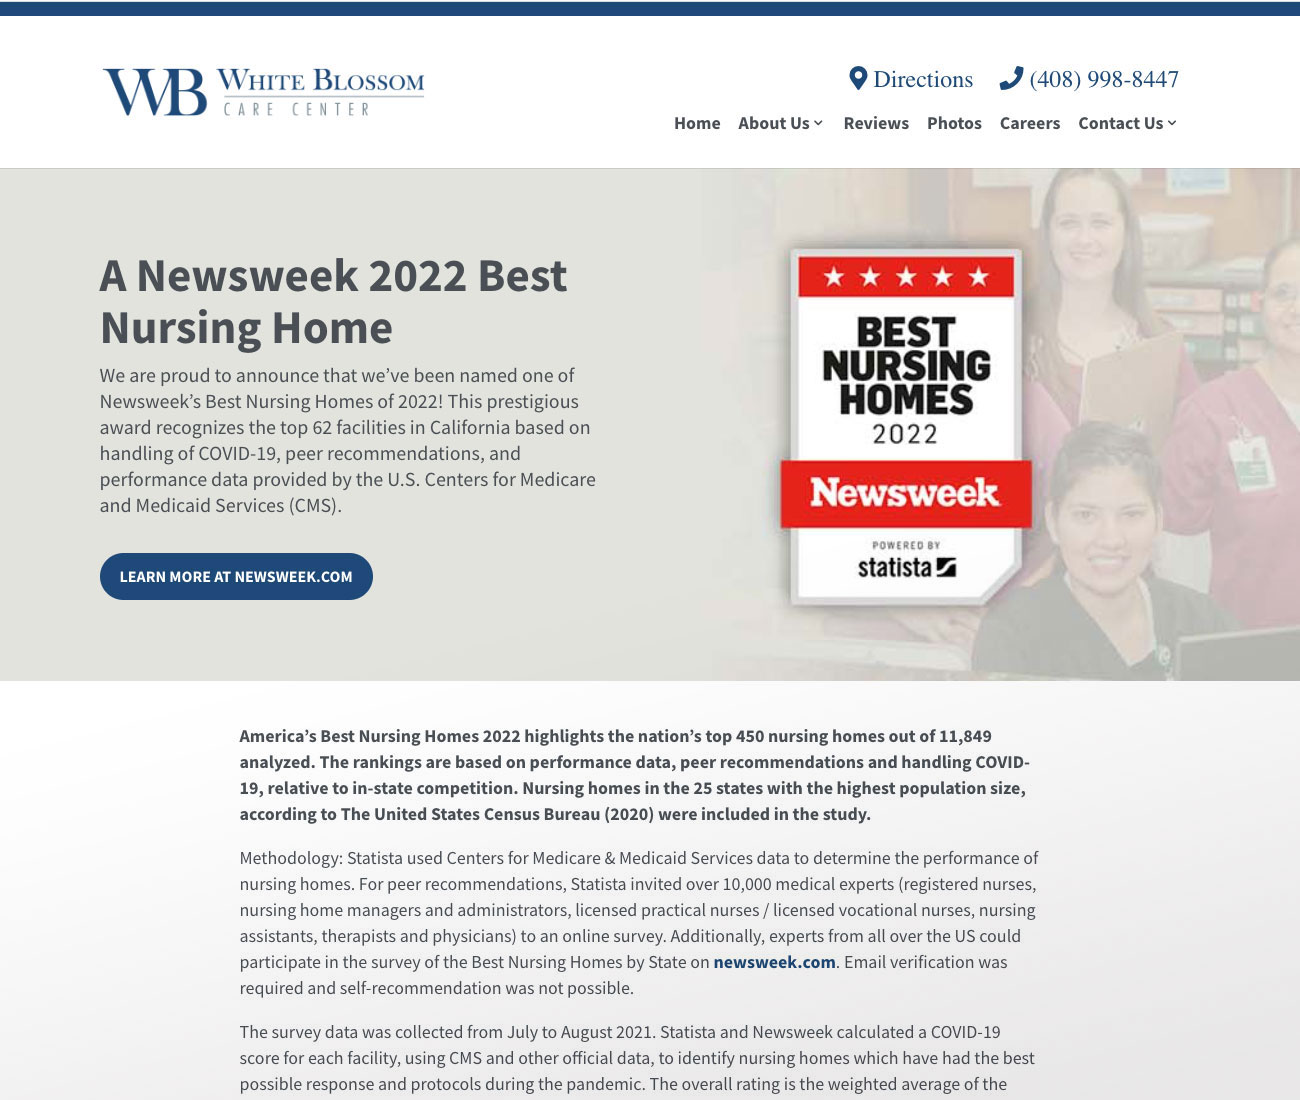 Award for Newsweek’s Best Nursing Homes of 2022